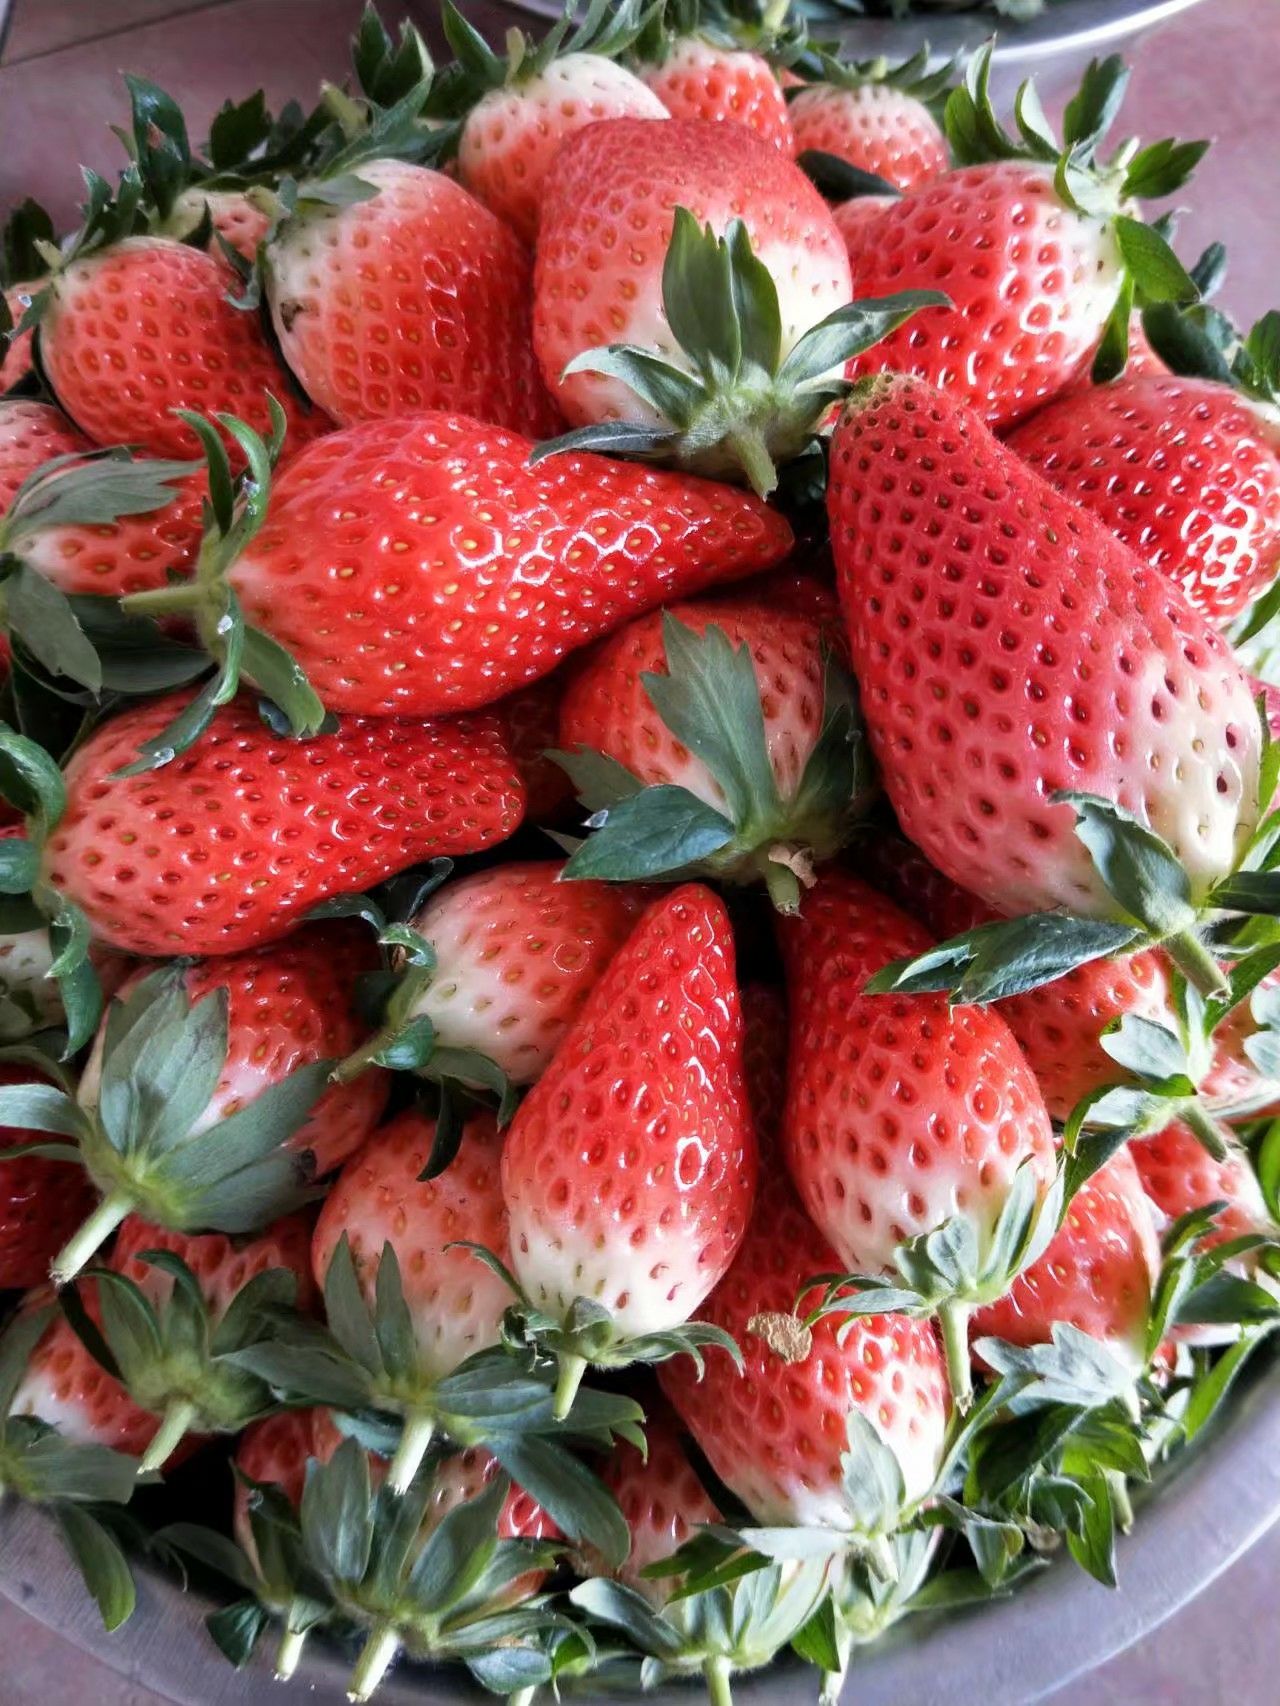 甜宝草莓 30克以上